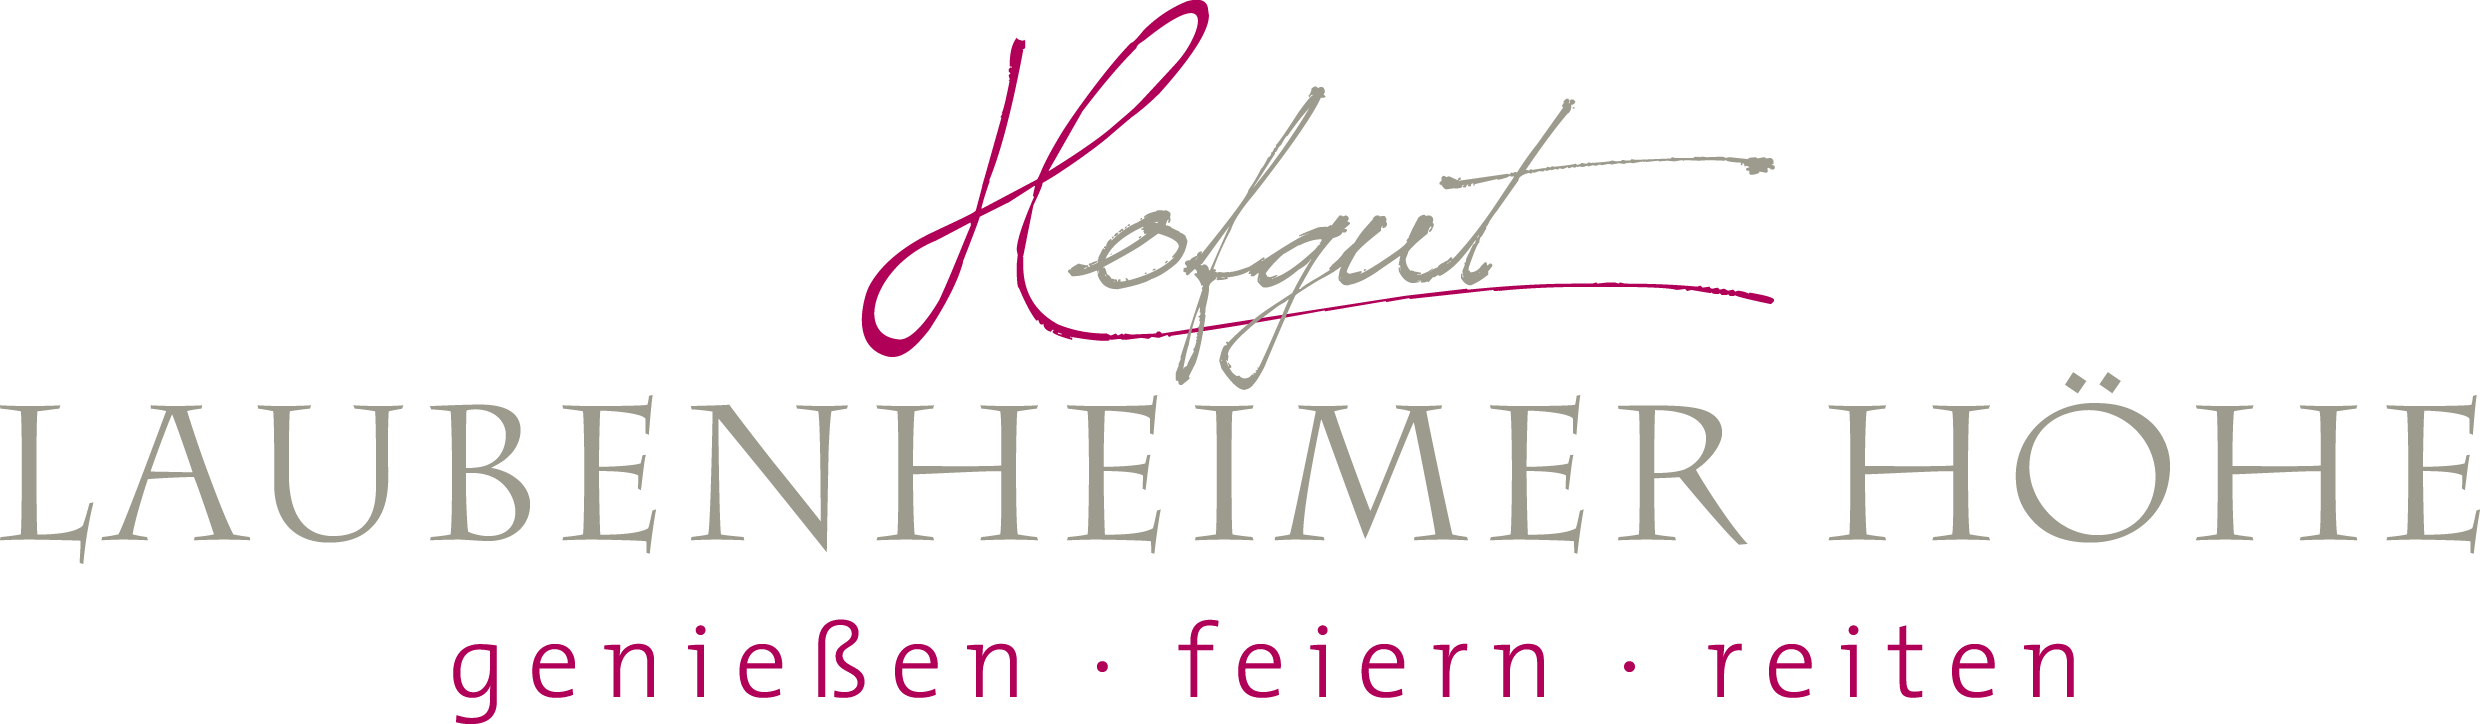 Logo Hofgut Laubenheimer Hoehe